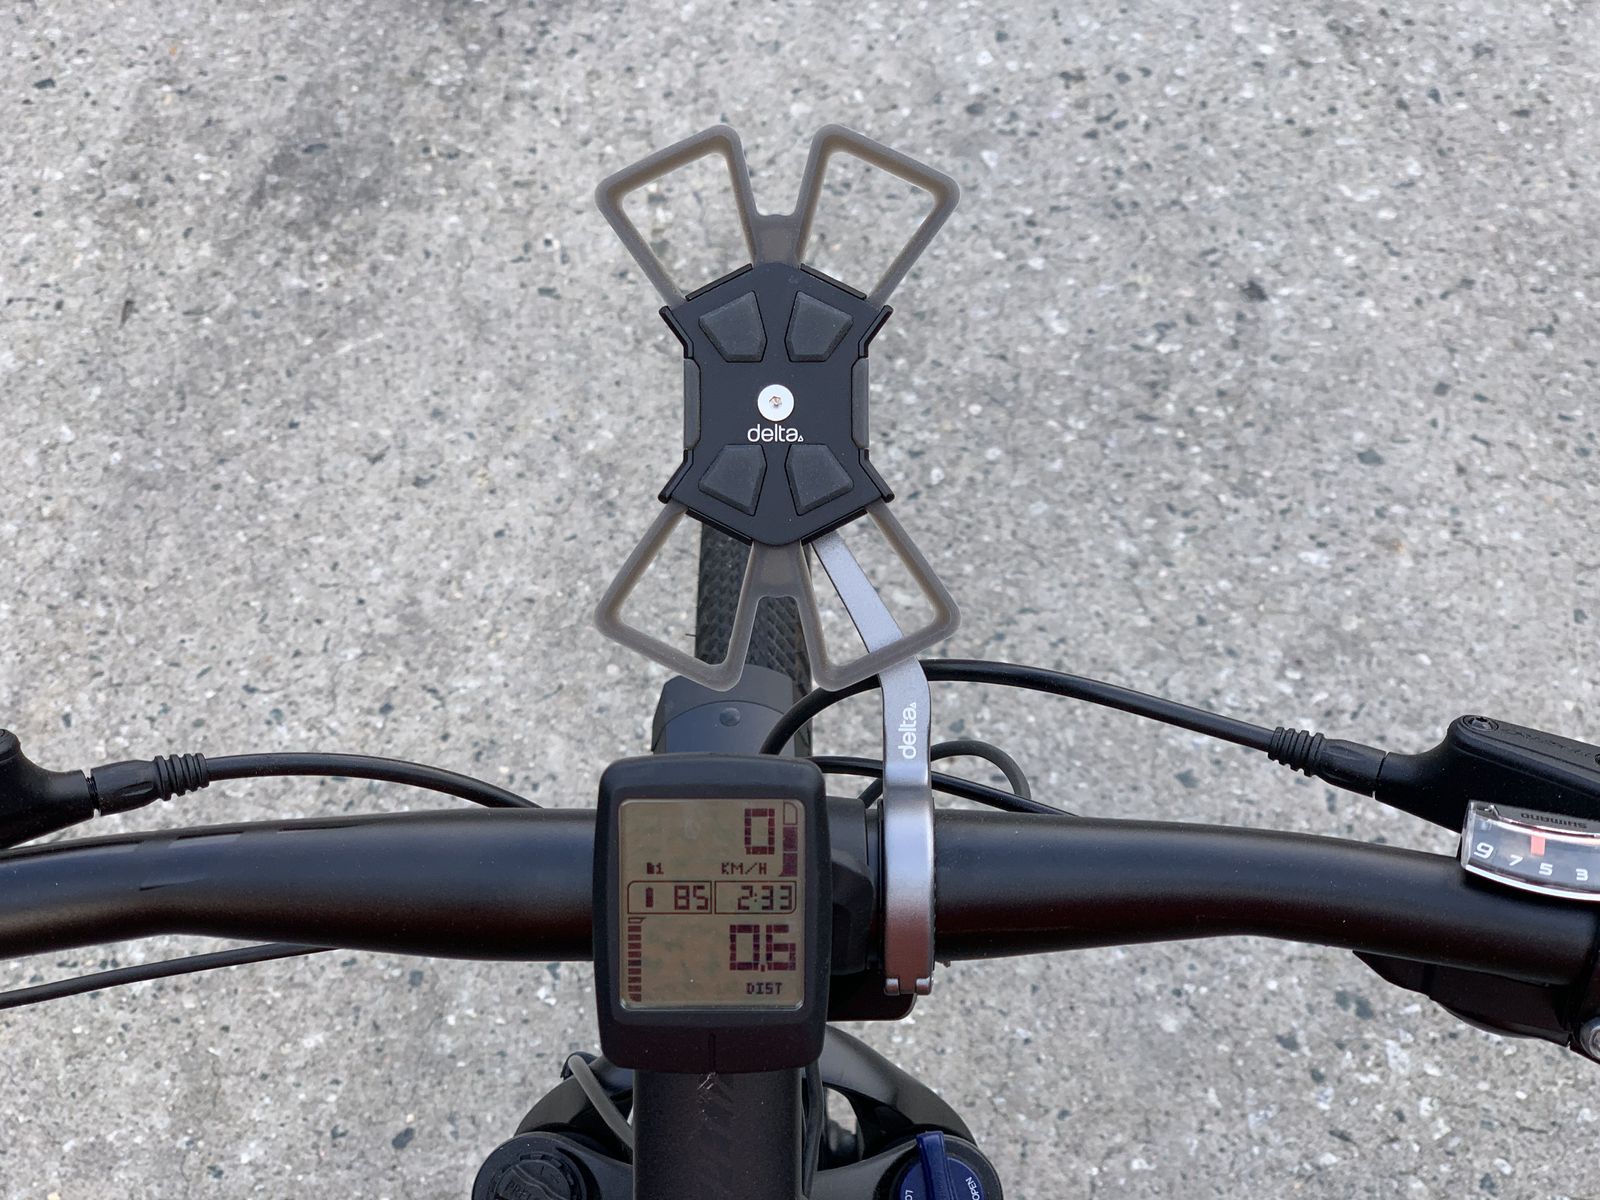 Phone Bike Mount